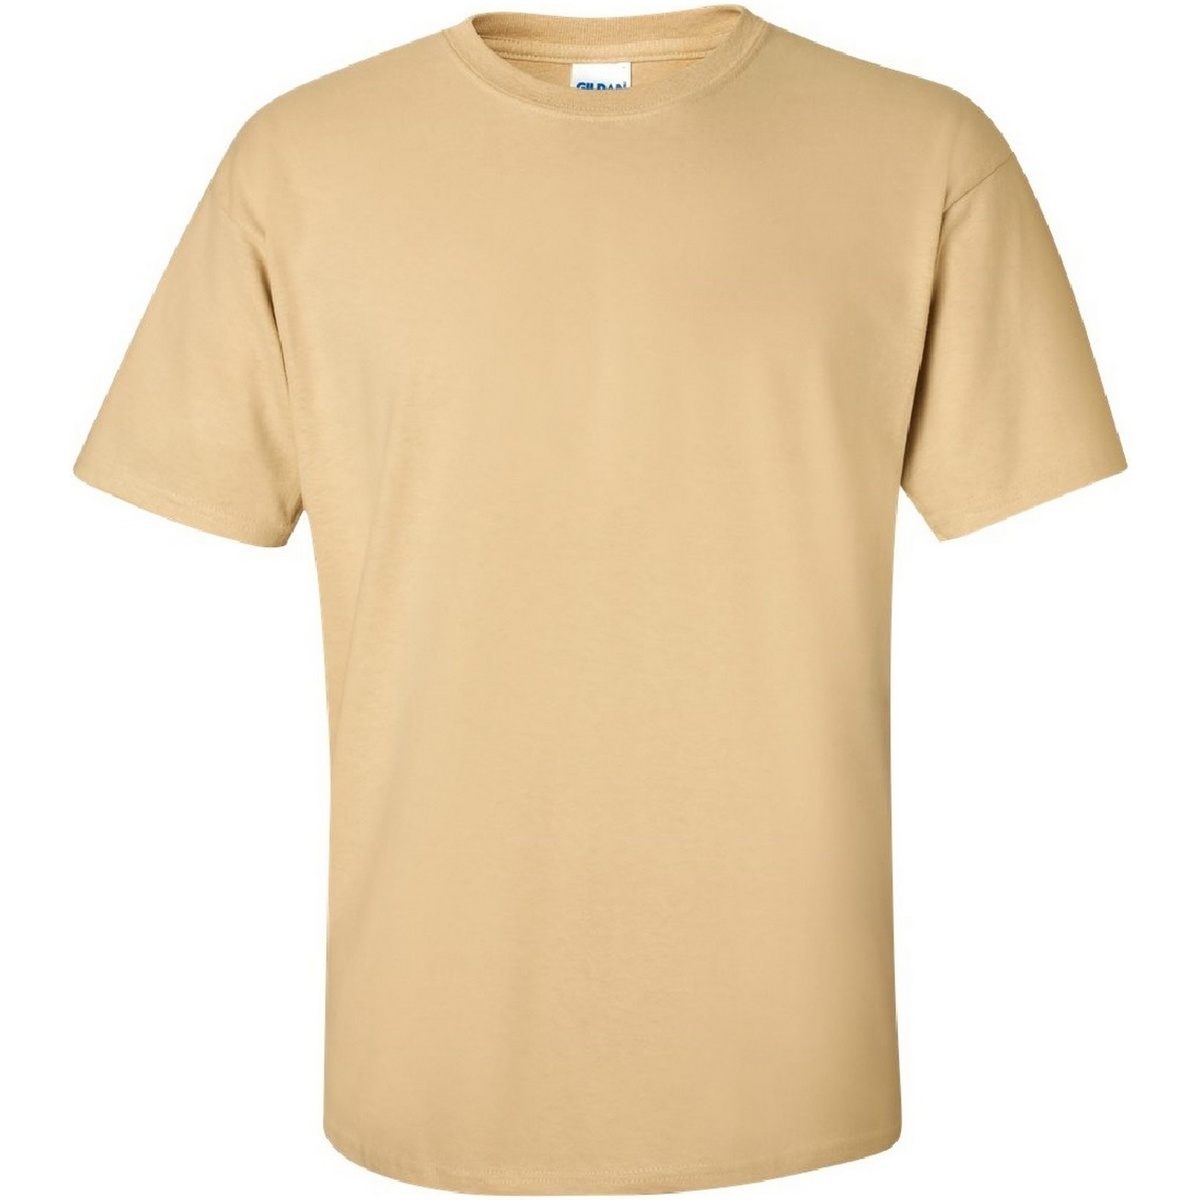 Vêtements Homme T-shirts manches courtes Gildan Ultra Multicolore